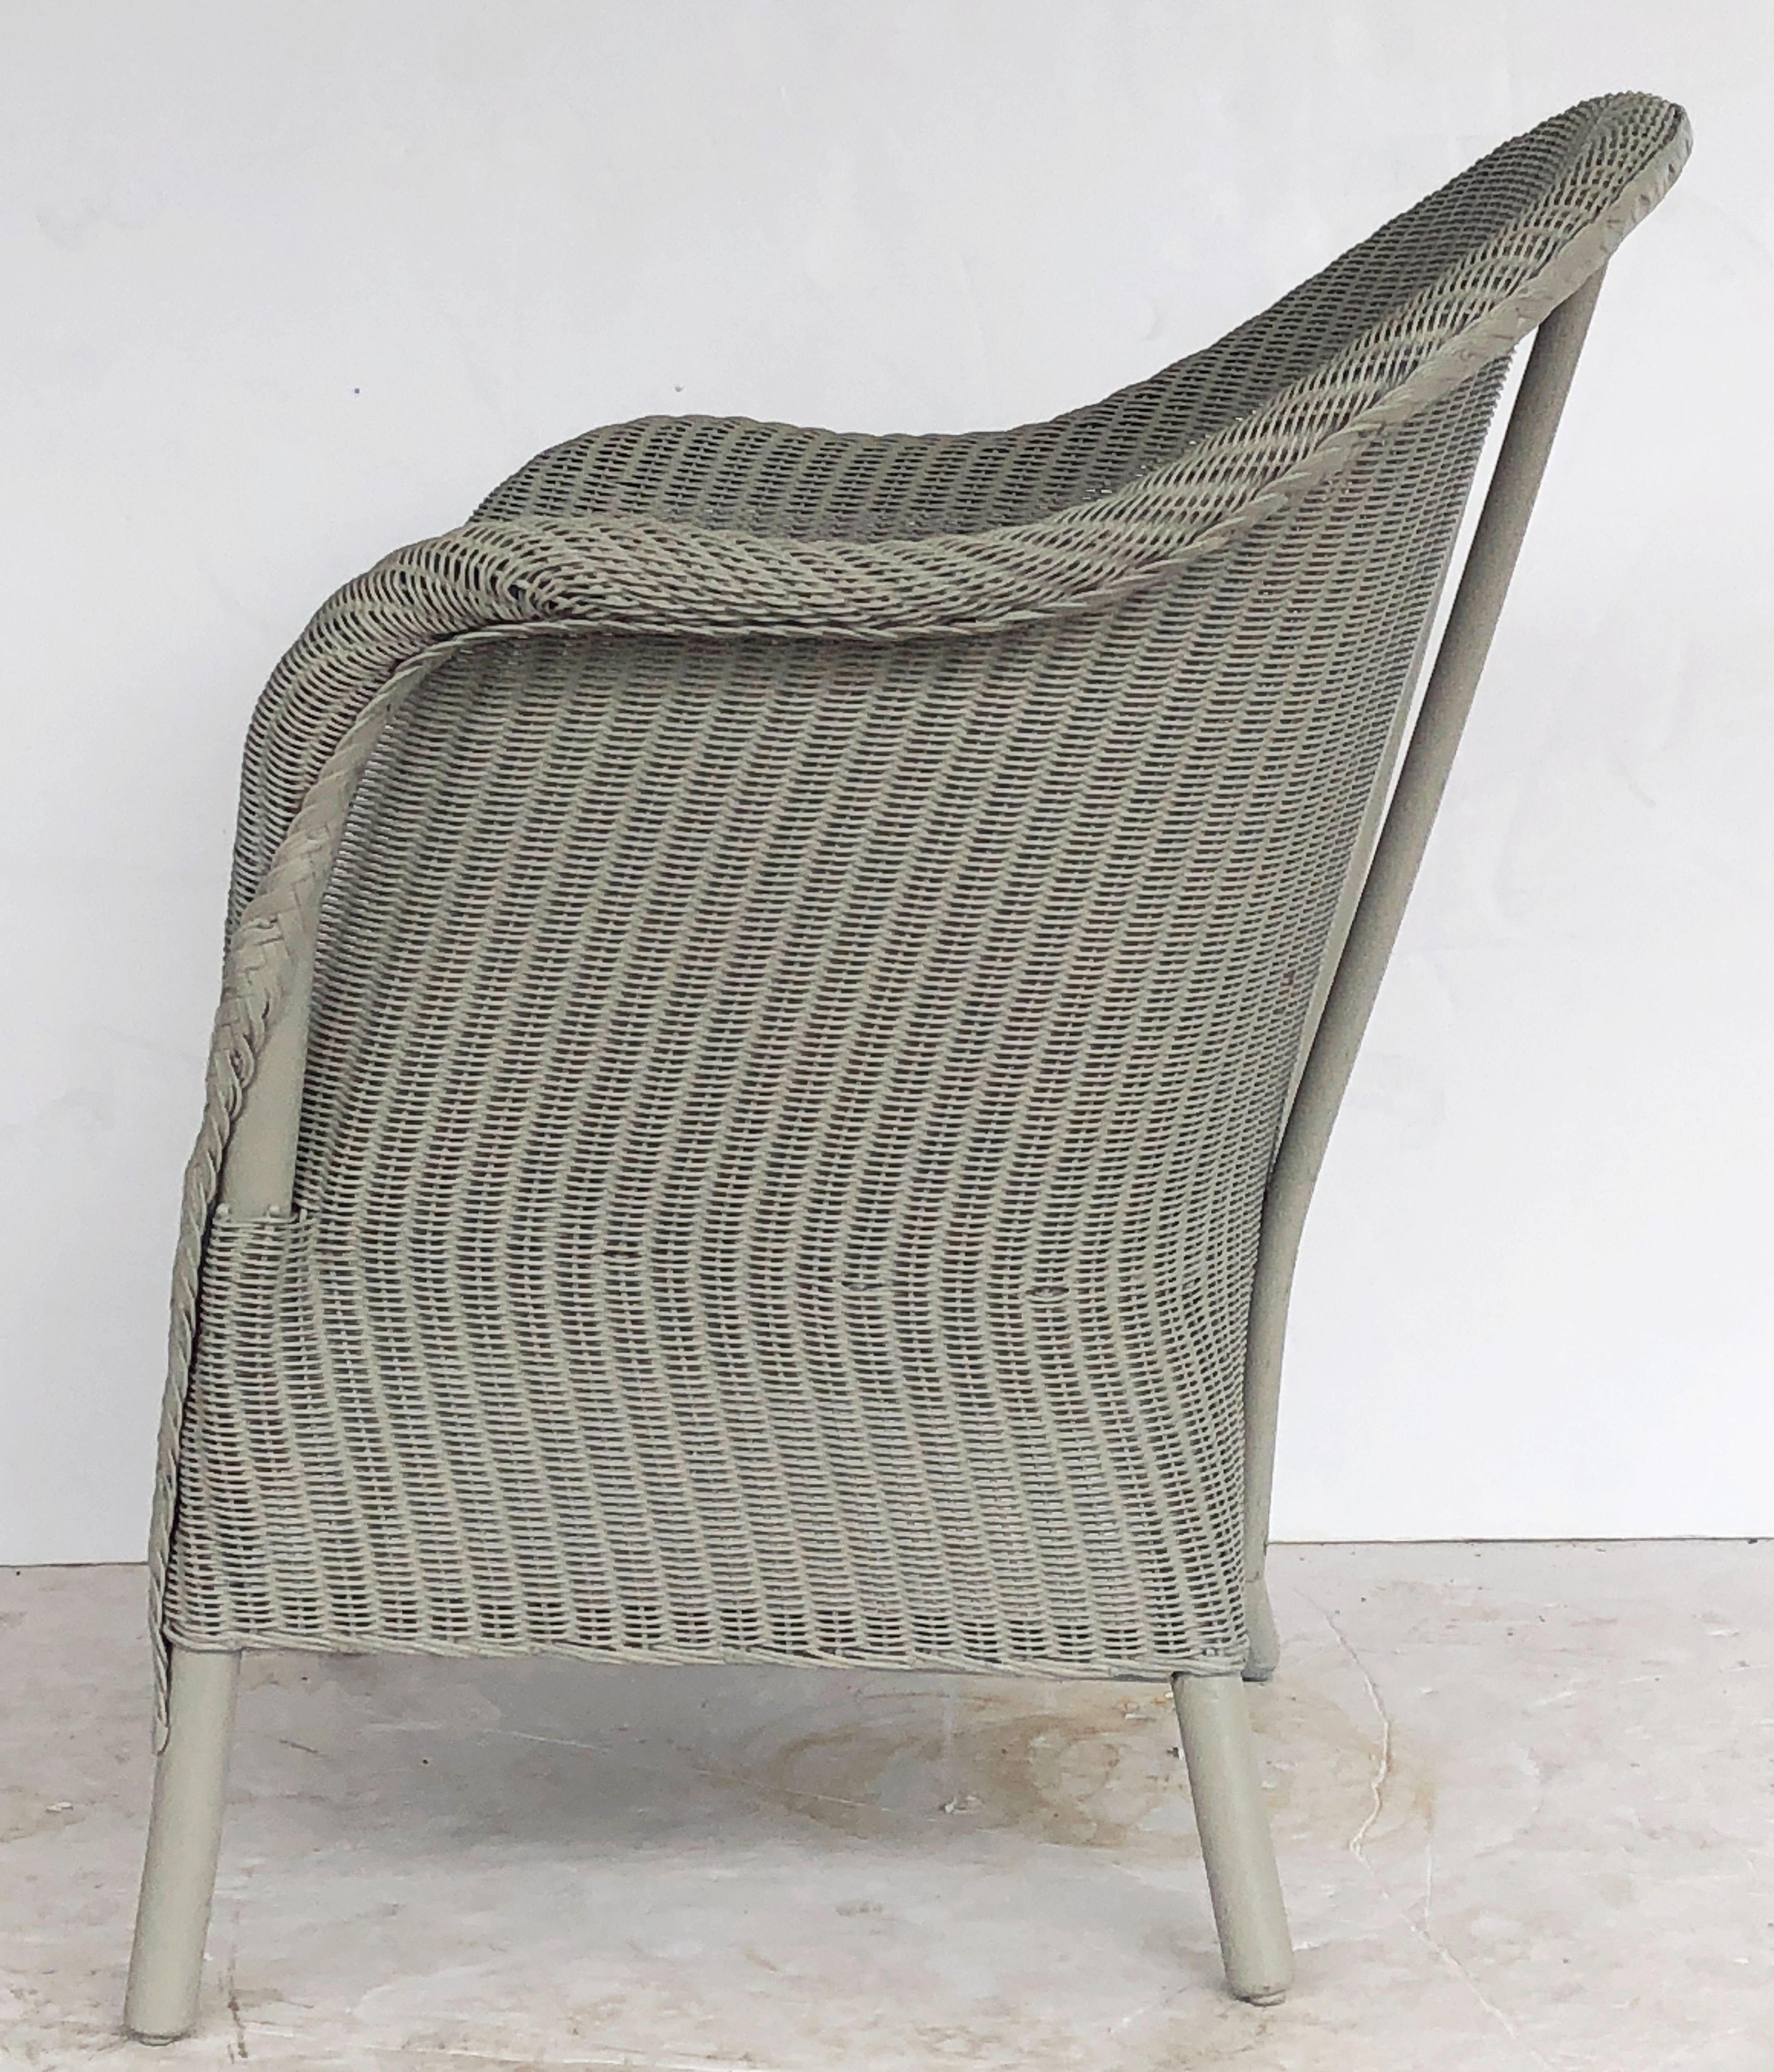 20th Century English Wicker Garden or Lounge Chair by Lloyd Loom